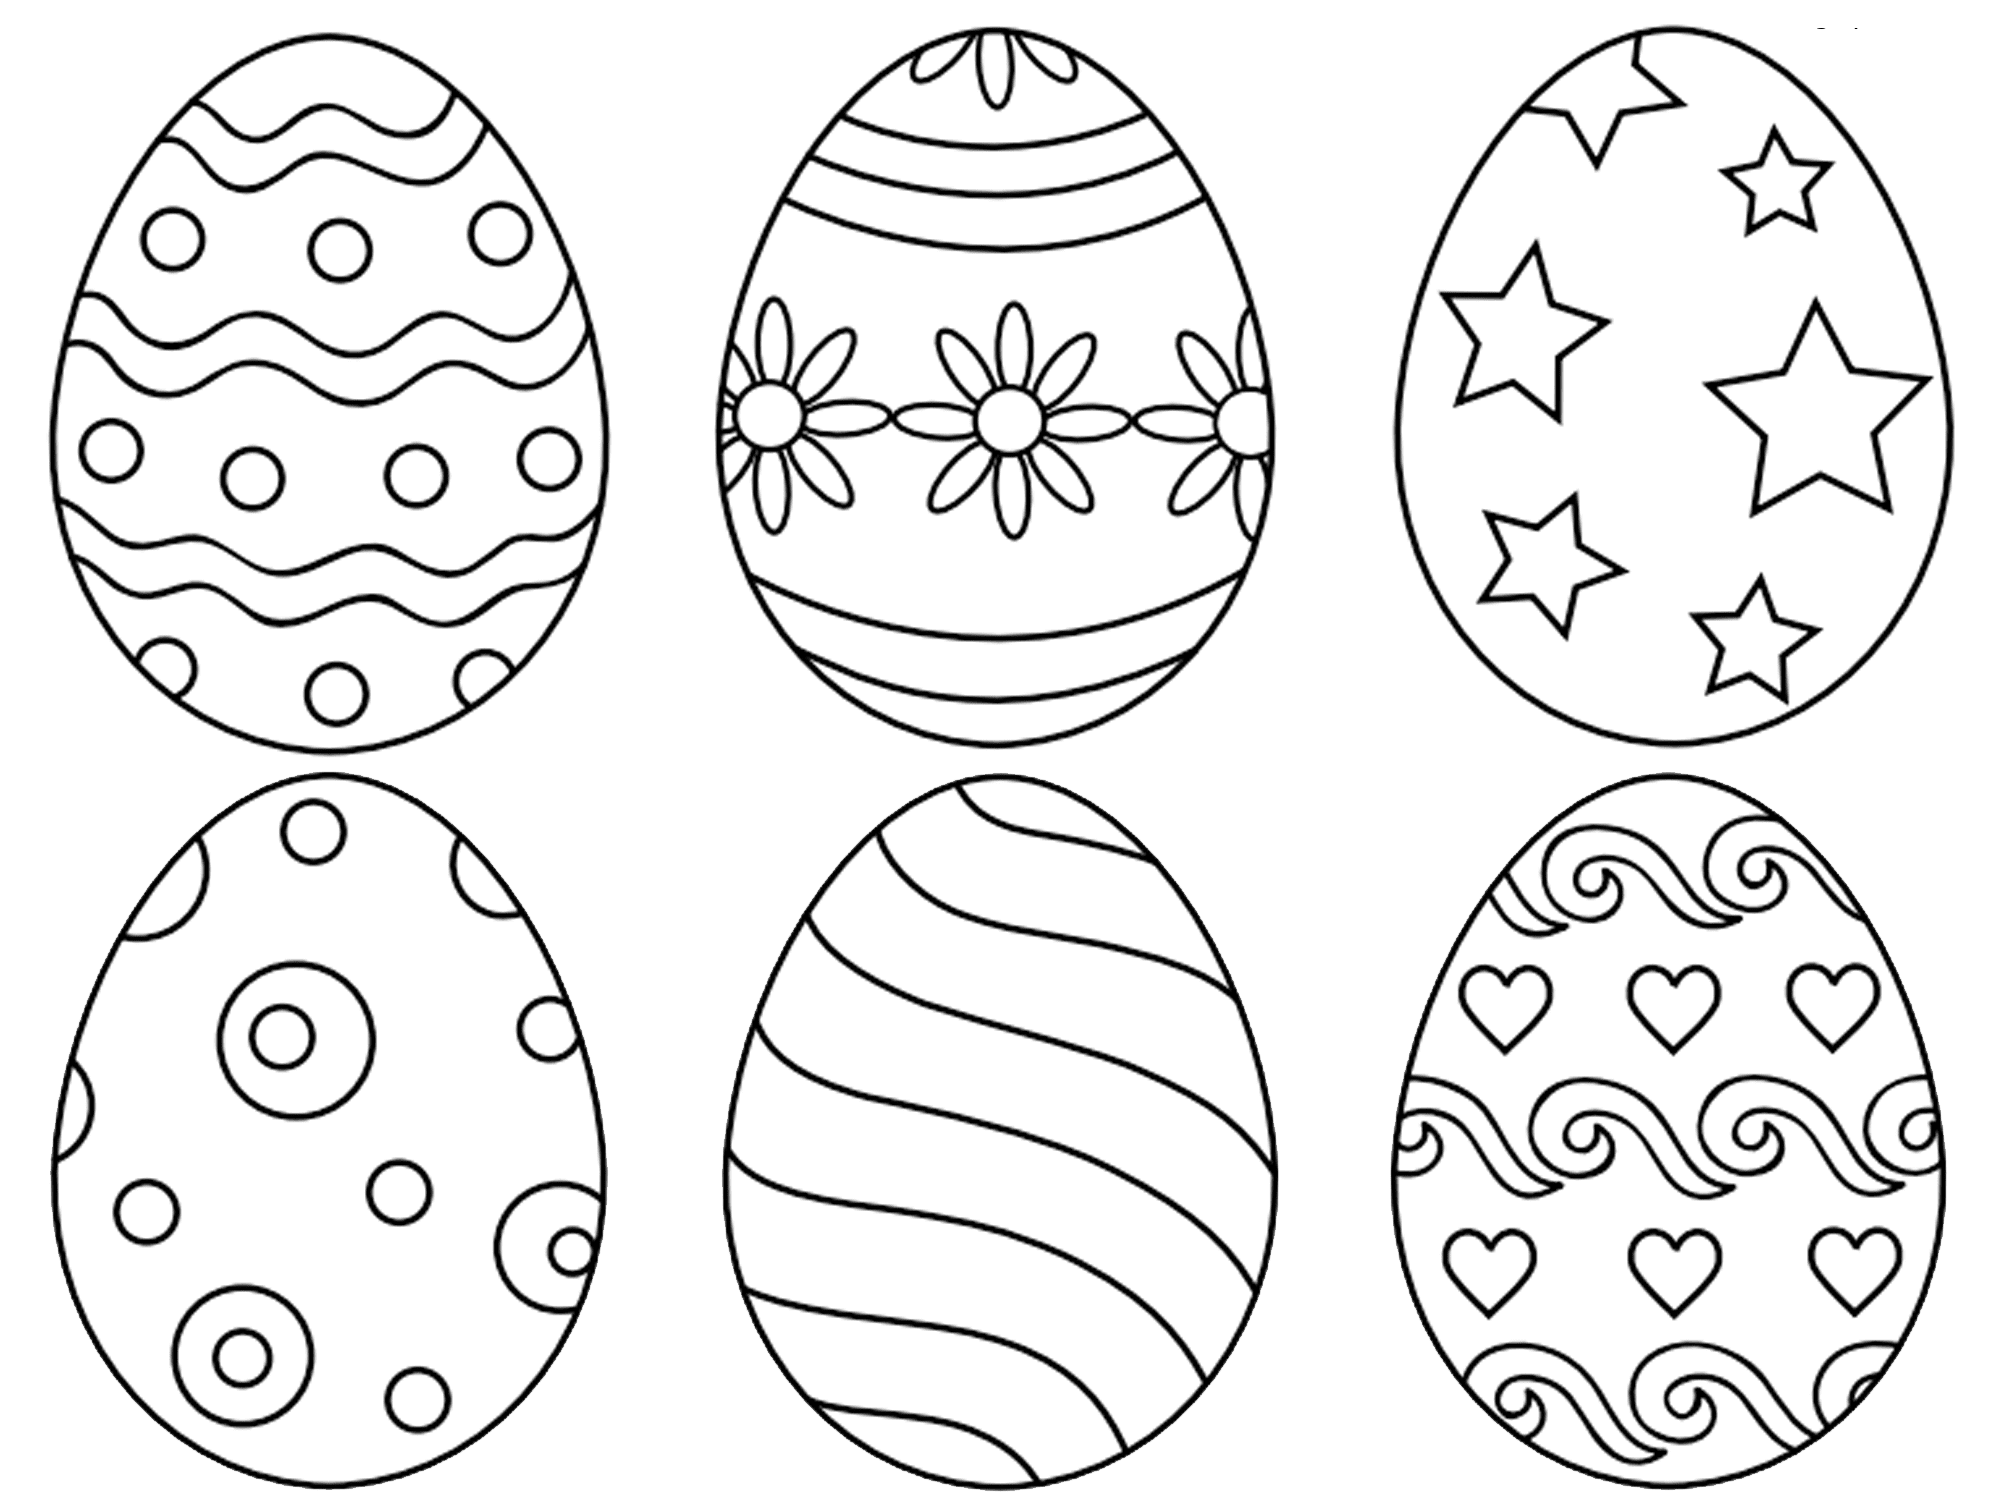 Mẫu tranh tô màu những quả trứng tuyệt đẹp